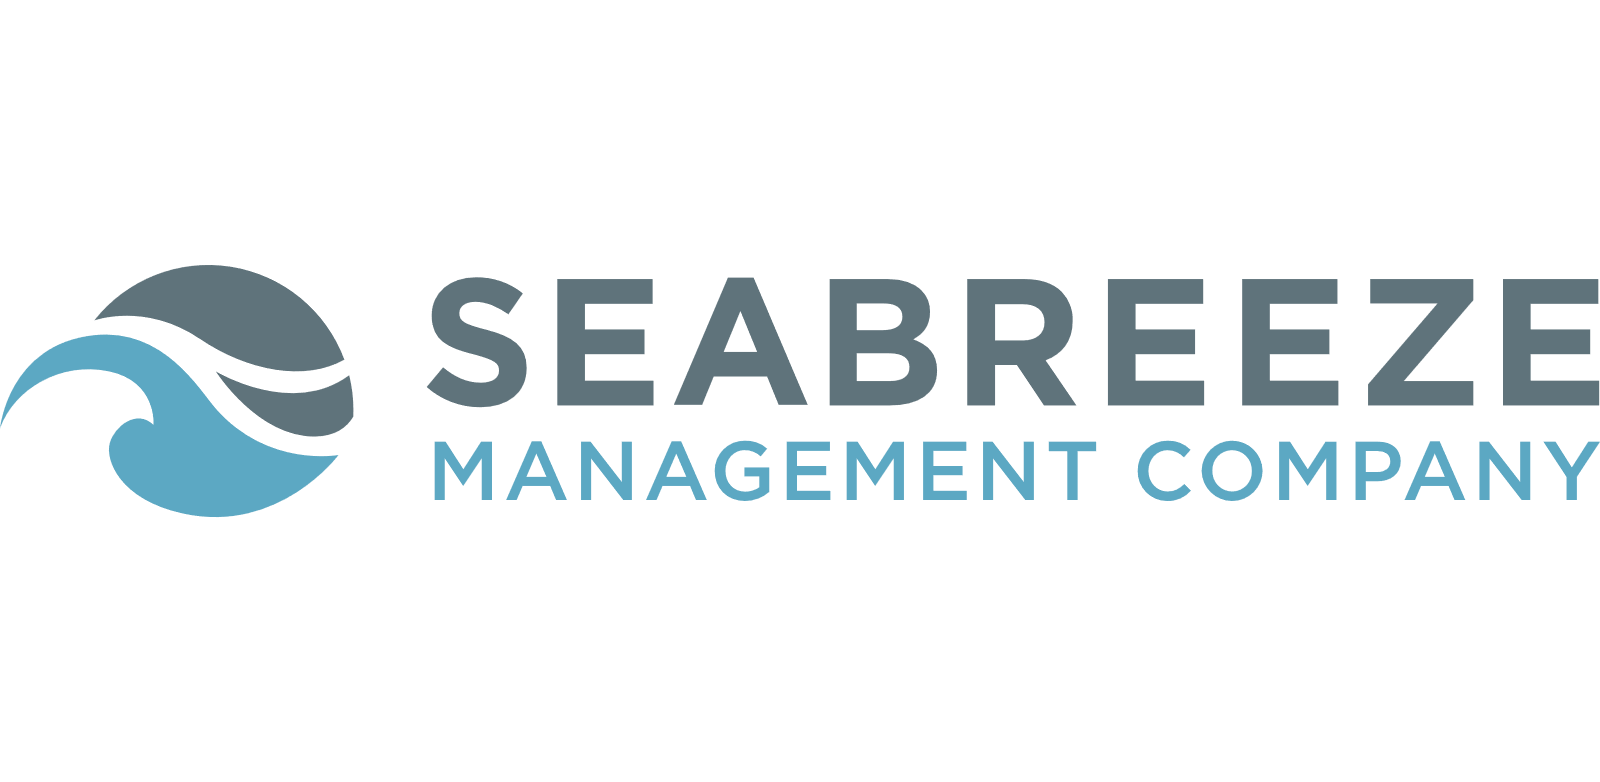 Seabreeze Management Company, Inc. logo